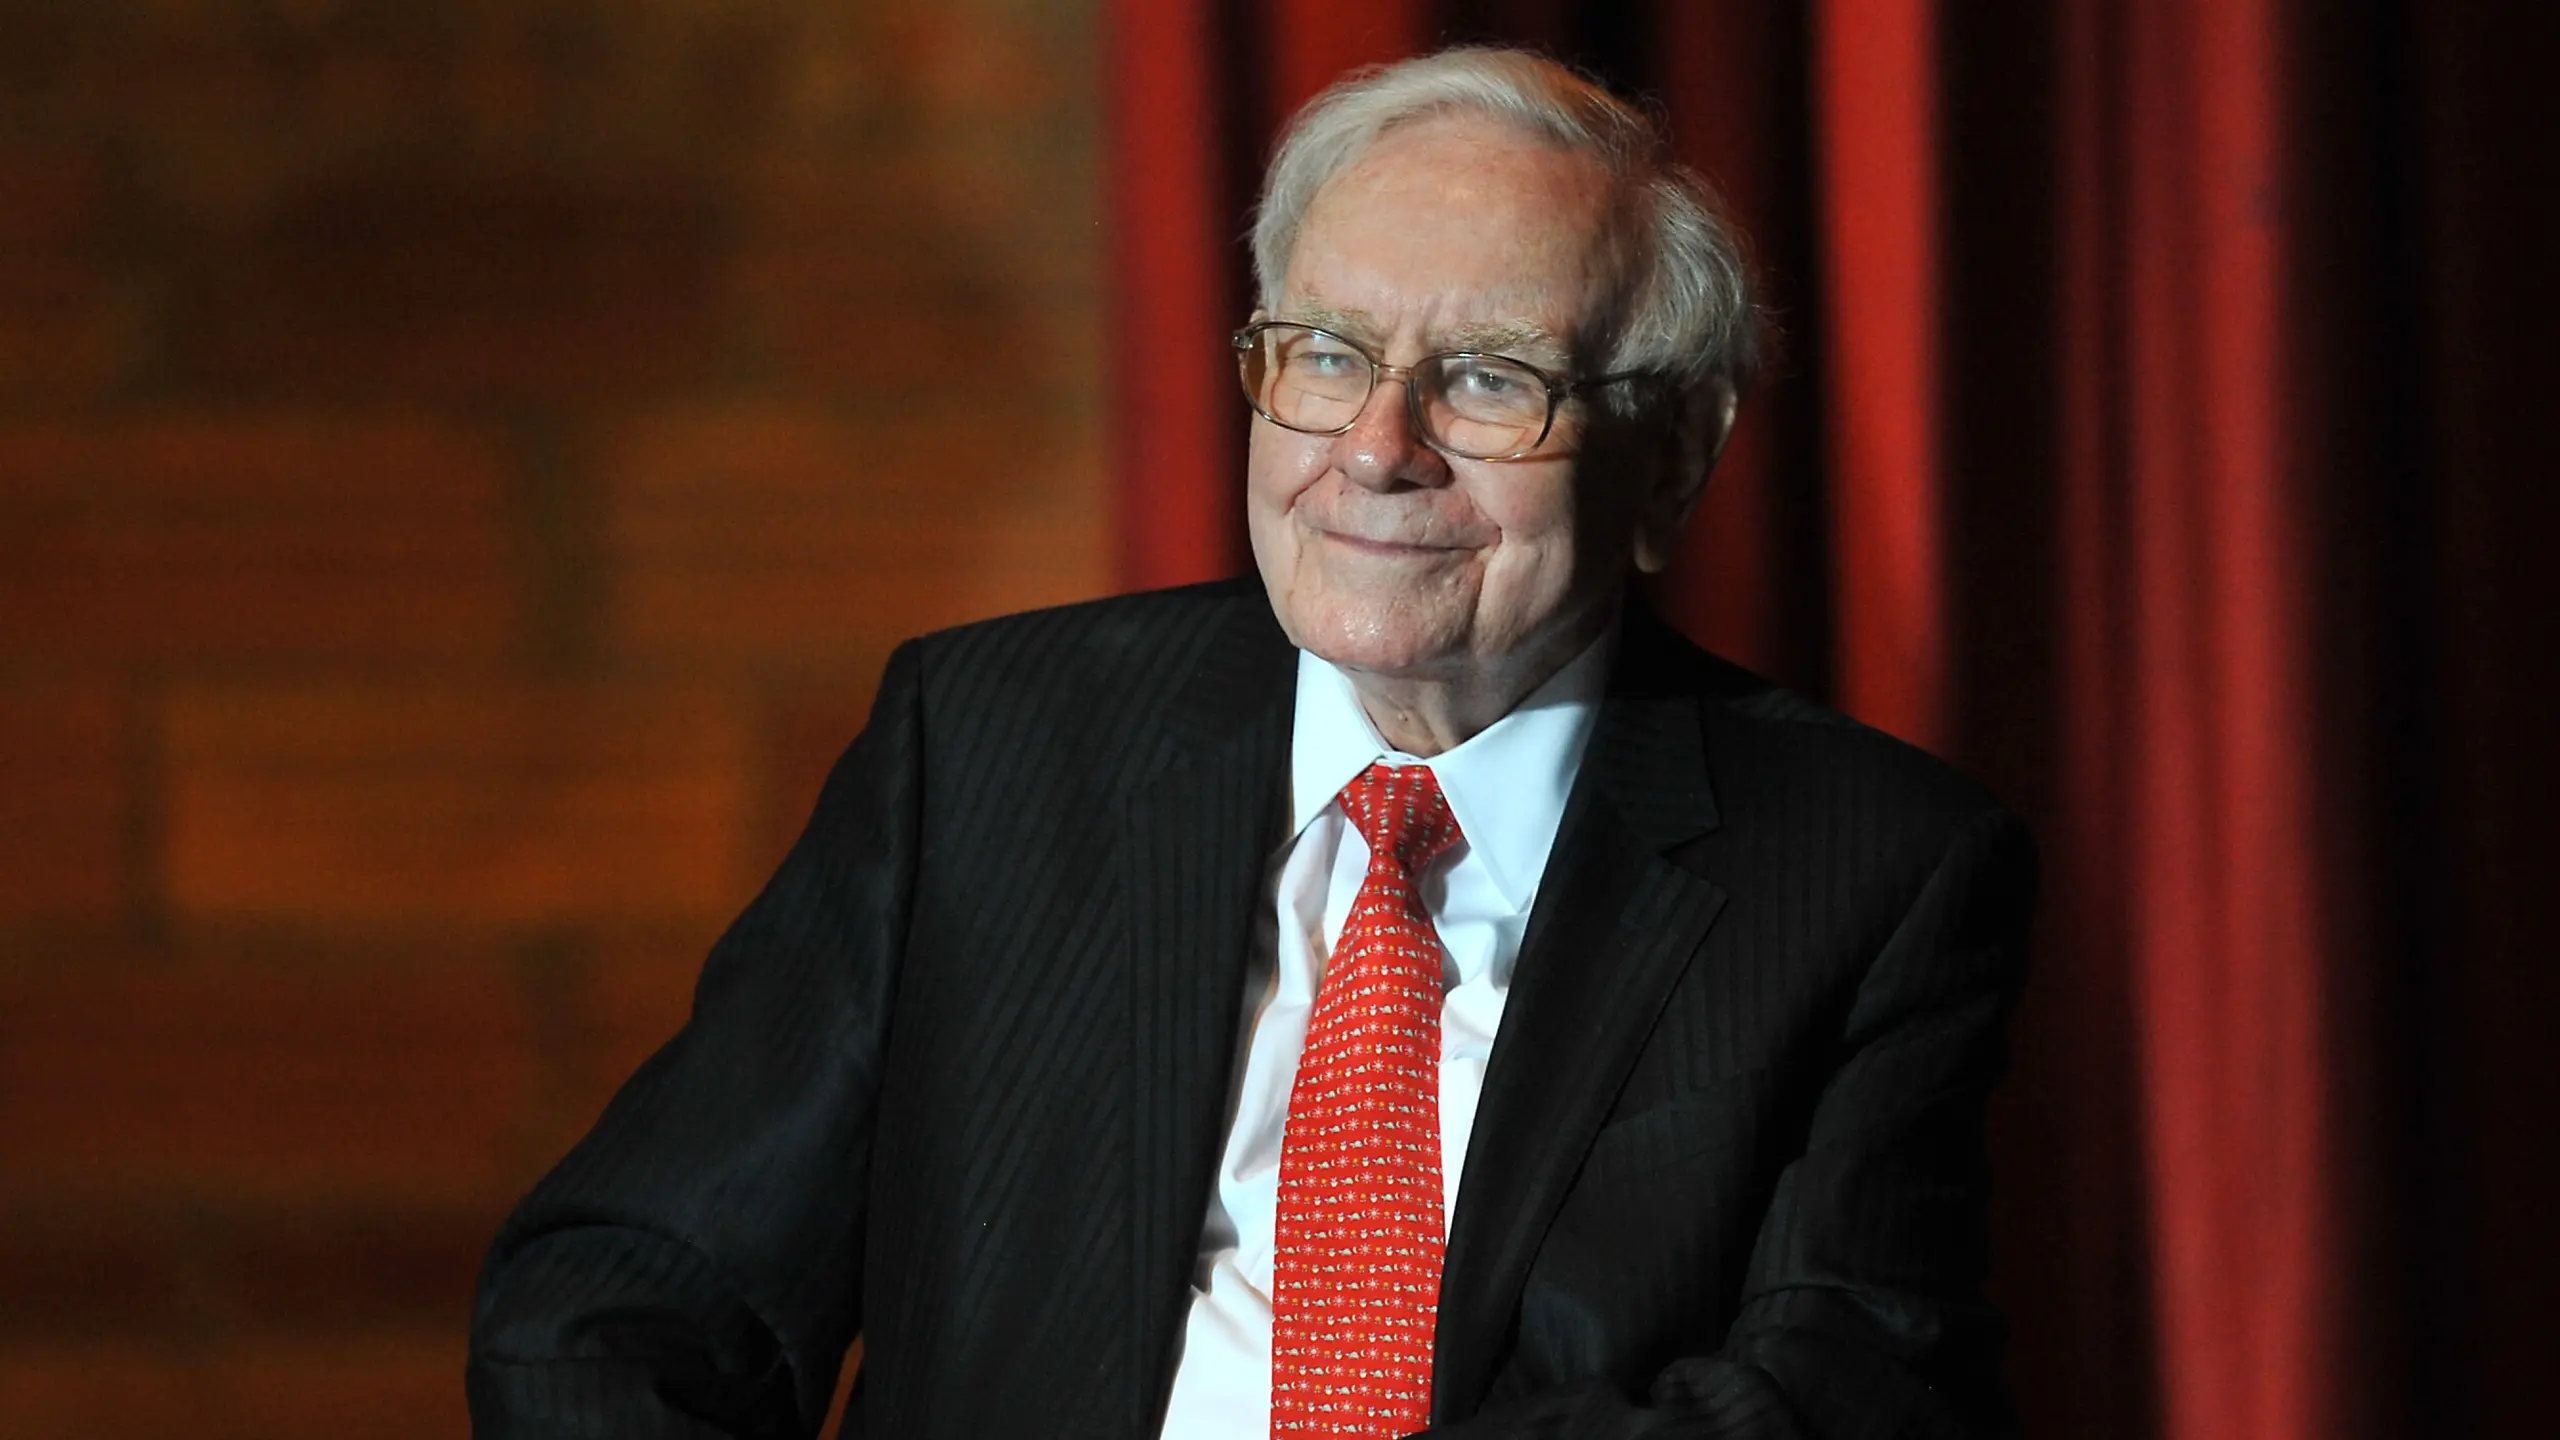 Warren Buffett, legendärer Investor, Berkshire Hathaway Chef und einer der reichsten Menschen der Welt.